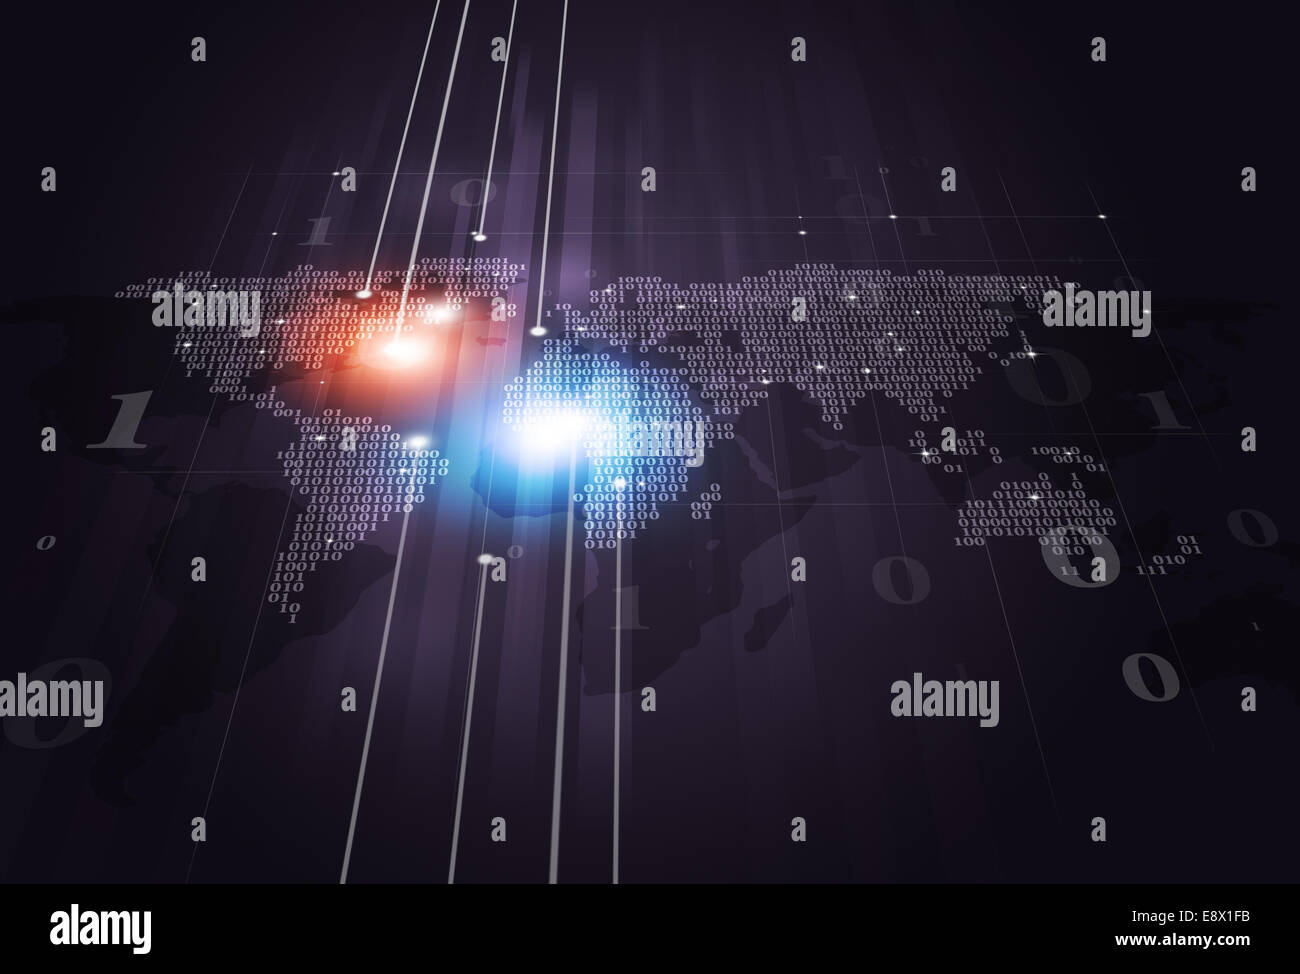 Tecnologia astratta codice binario mappa del mondo su sfondo scuro Foto Stock